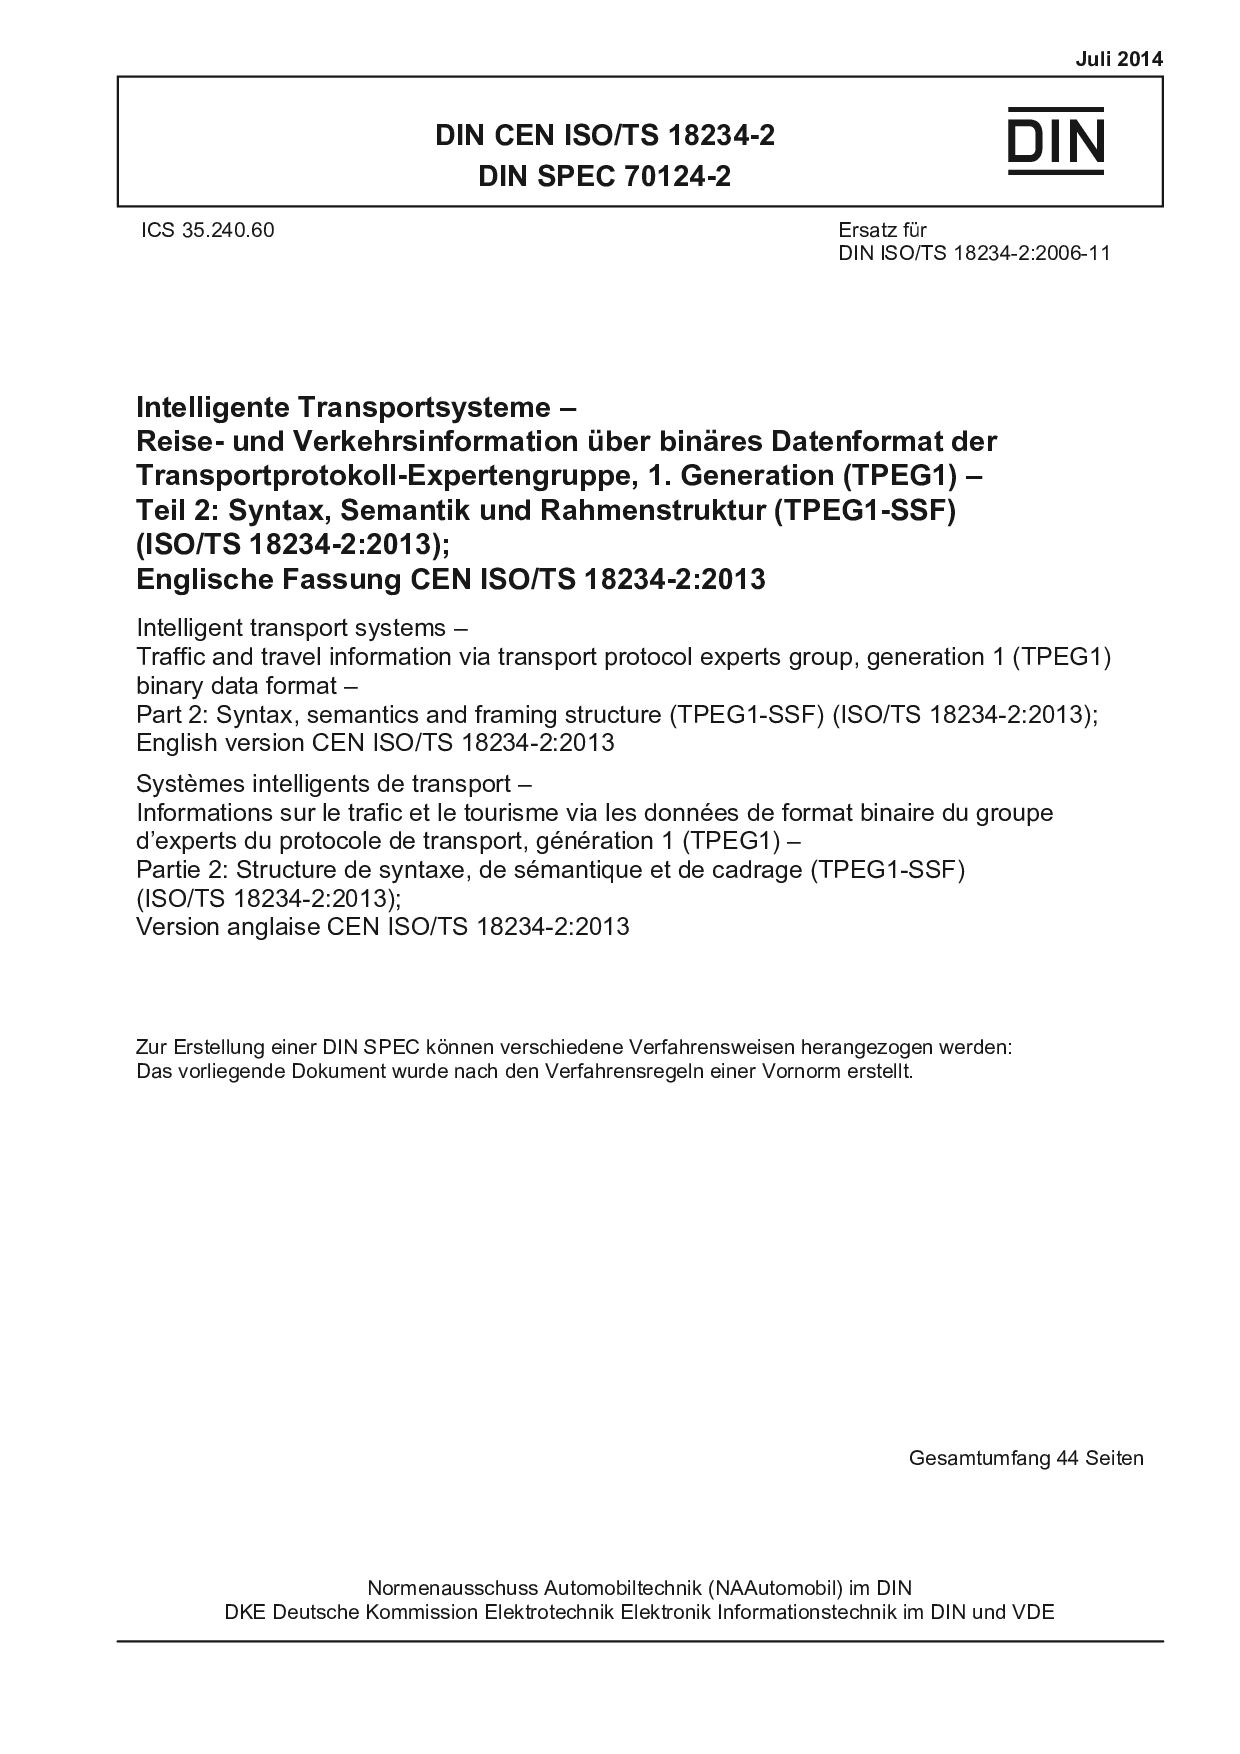 DIN CEN ISO/TS 18234-2:2014*DIN SPEC 70124-2:2014封面图